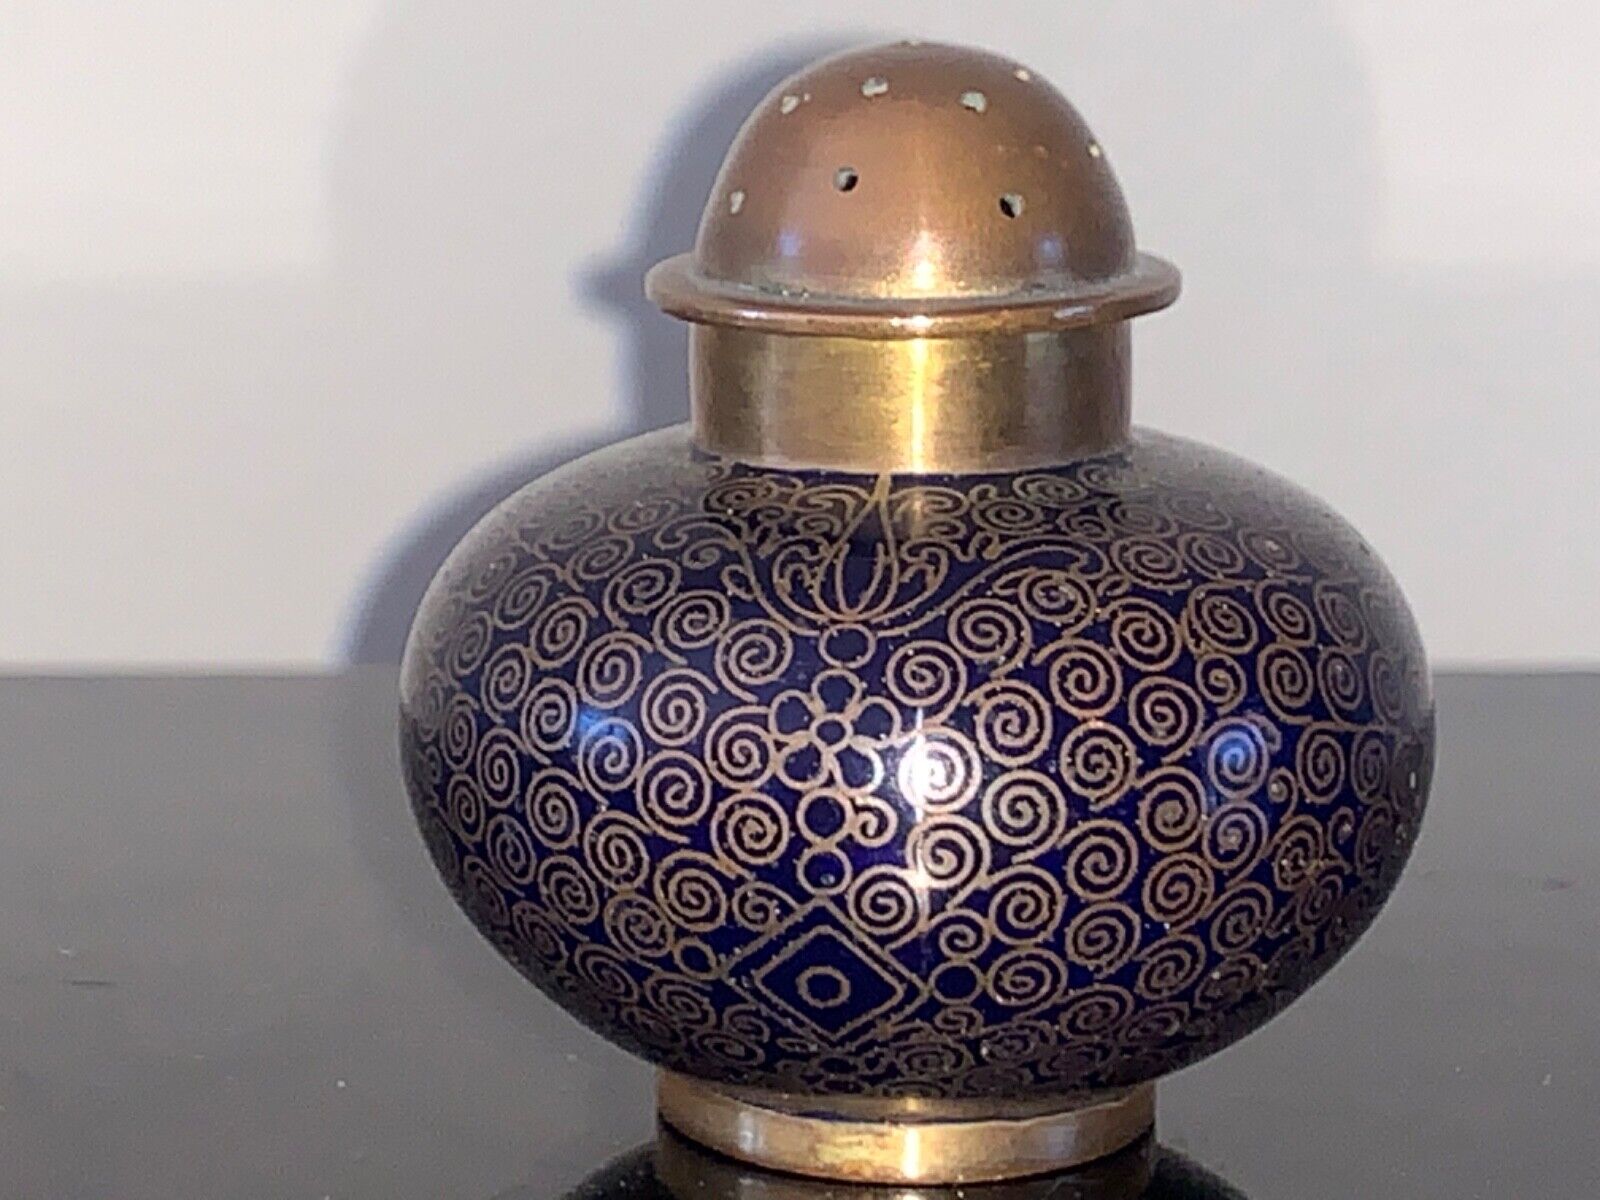 Antique Valuations: Antique vintage Japanese blue enamel cloisonné pepper pot shaker Meiji